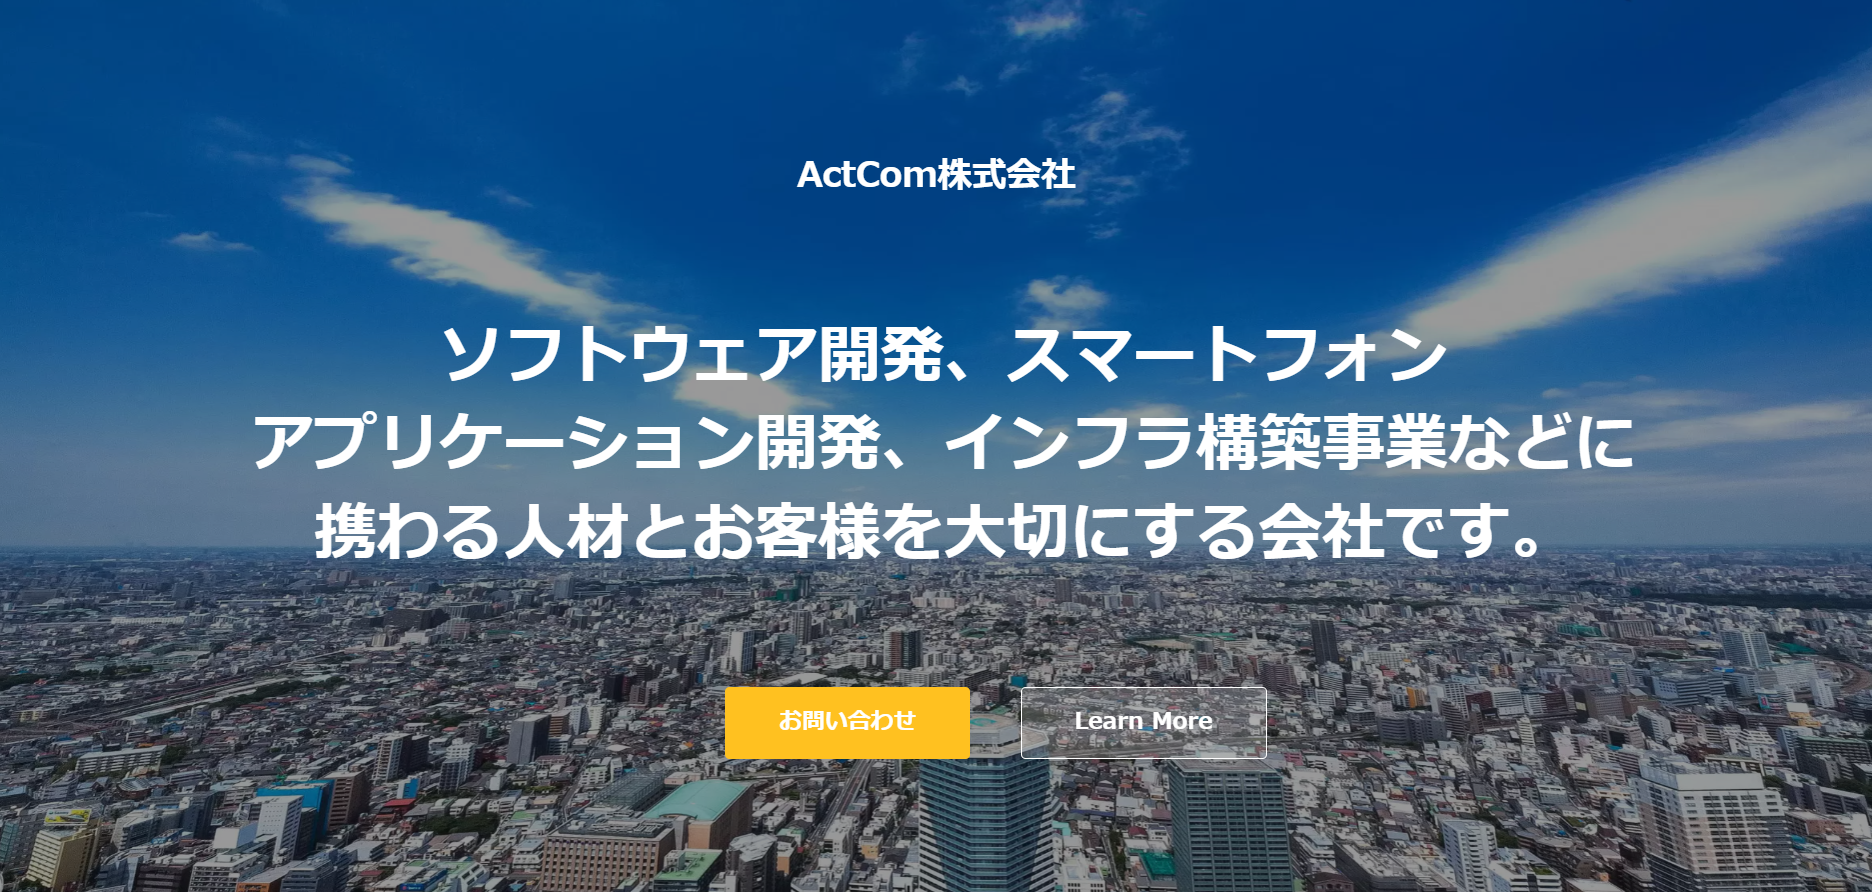 ActCom ホームページリニューアルのお知らせ